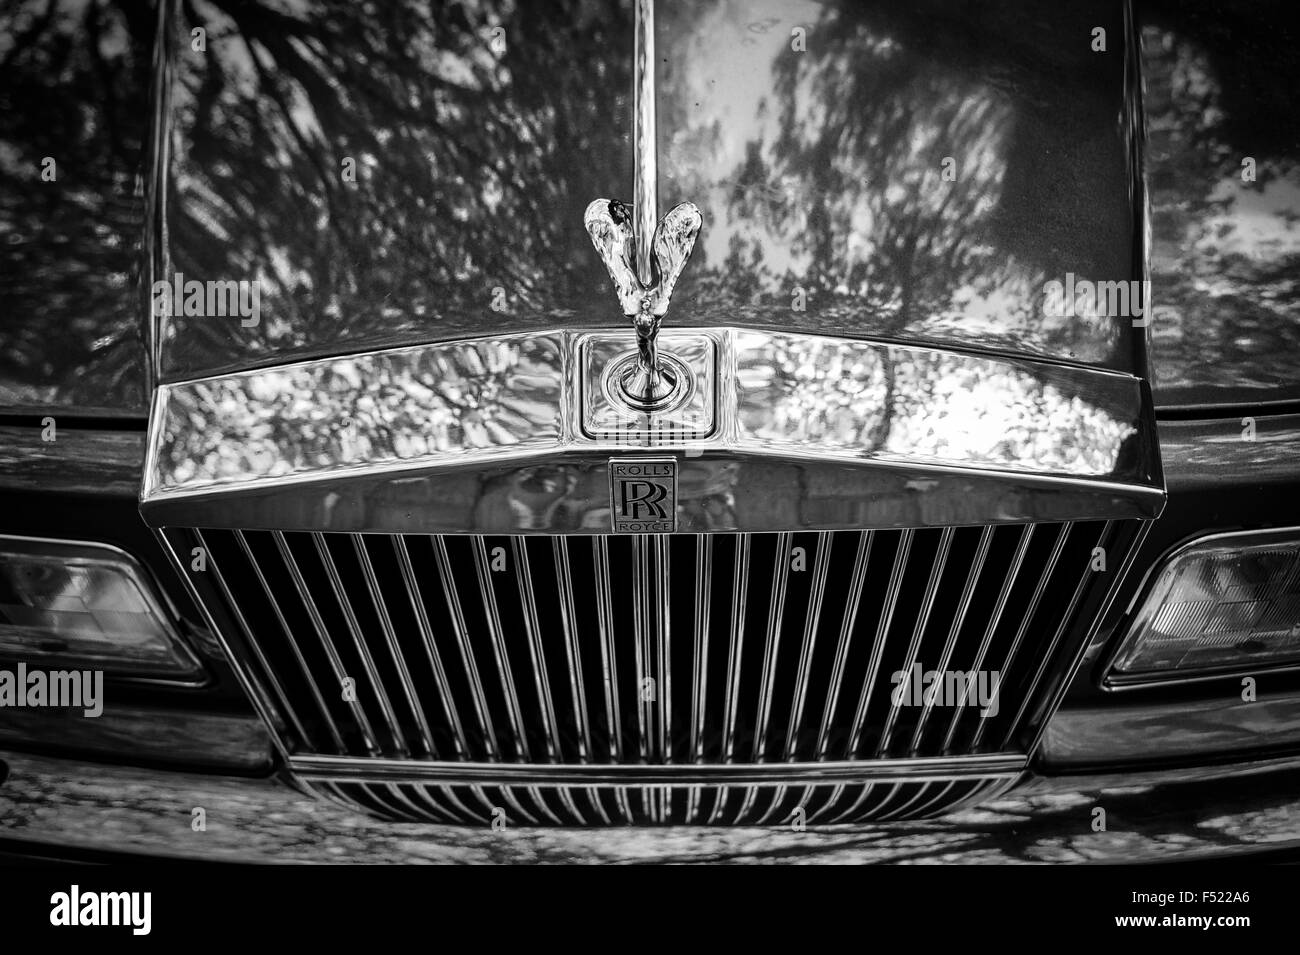 Grill chrome d'un Rolls Royce voiture classique Banque D'Images